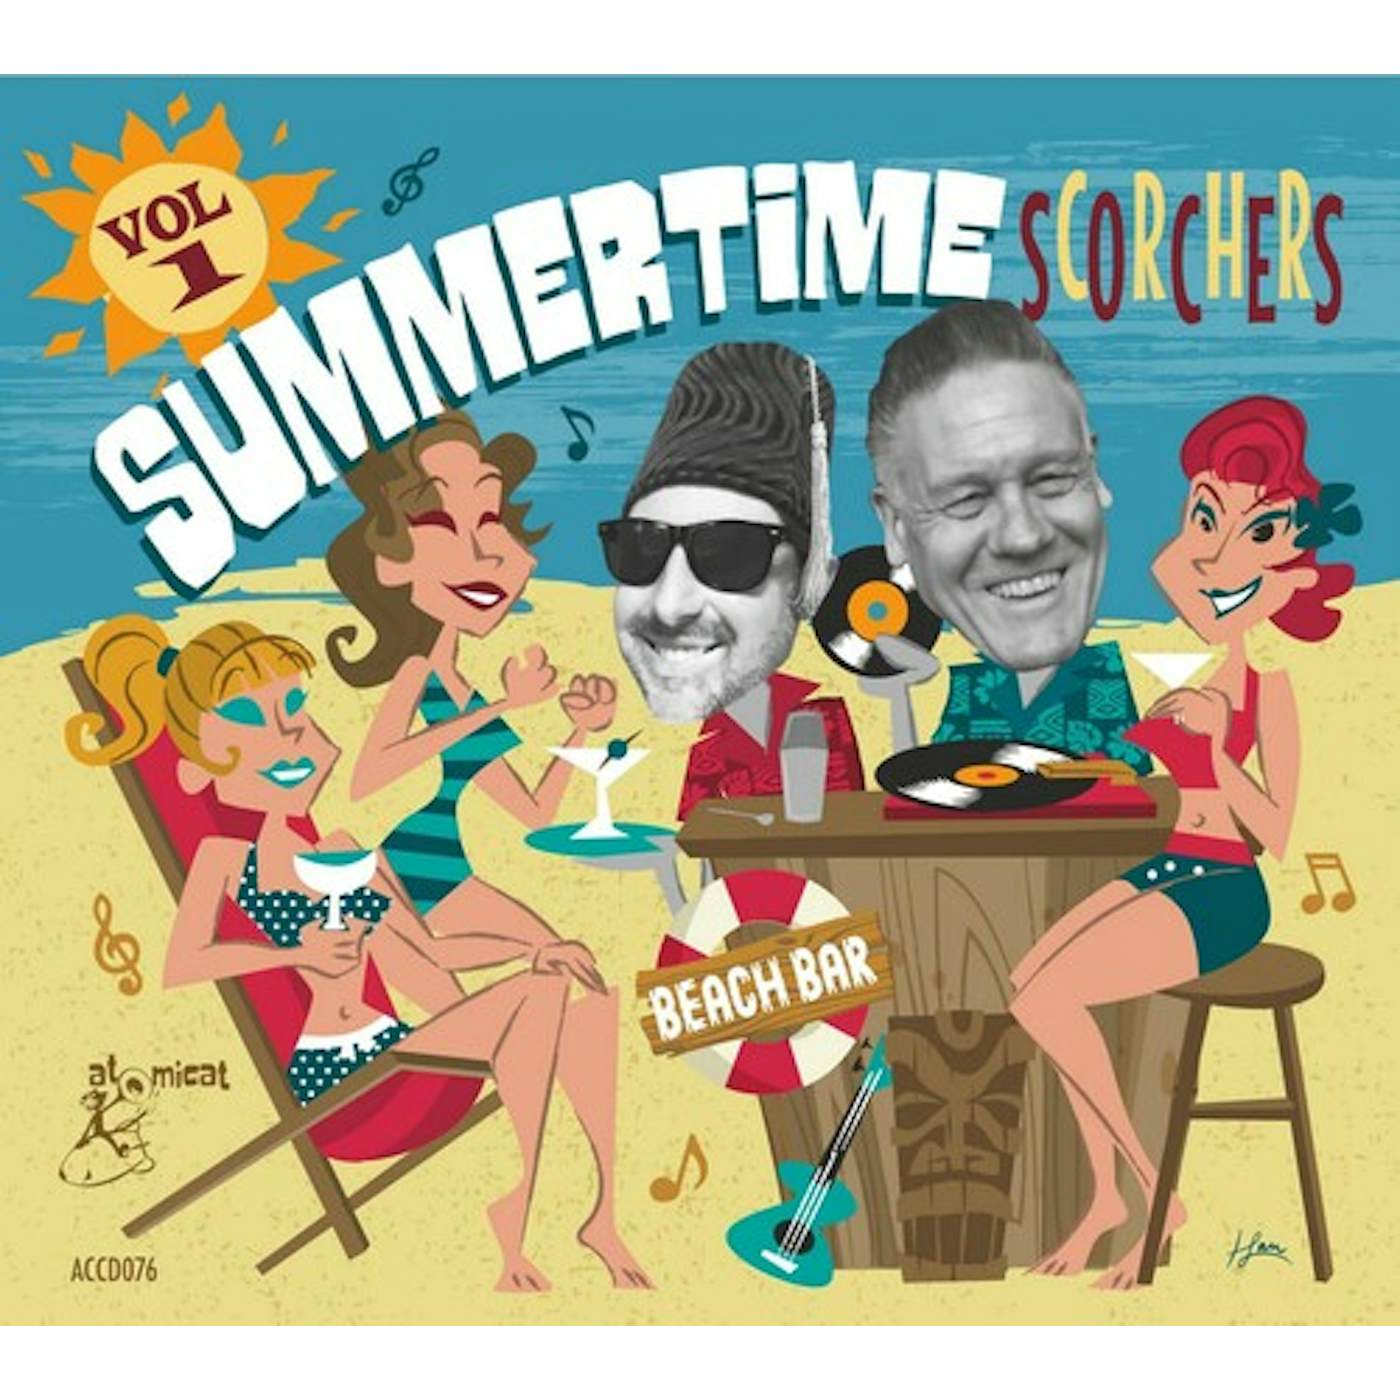 Summertime Scorchers 1 (Various Artists) SUMMERTIME SCORCHERS 1 / VARIOUS CD